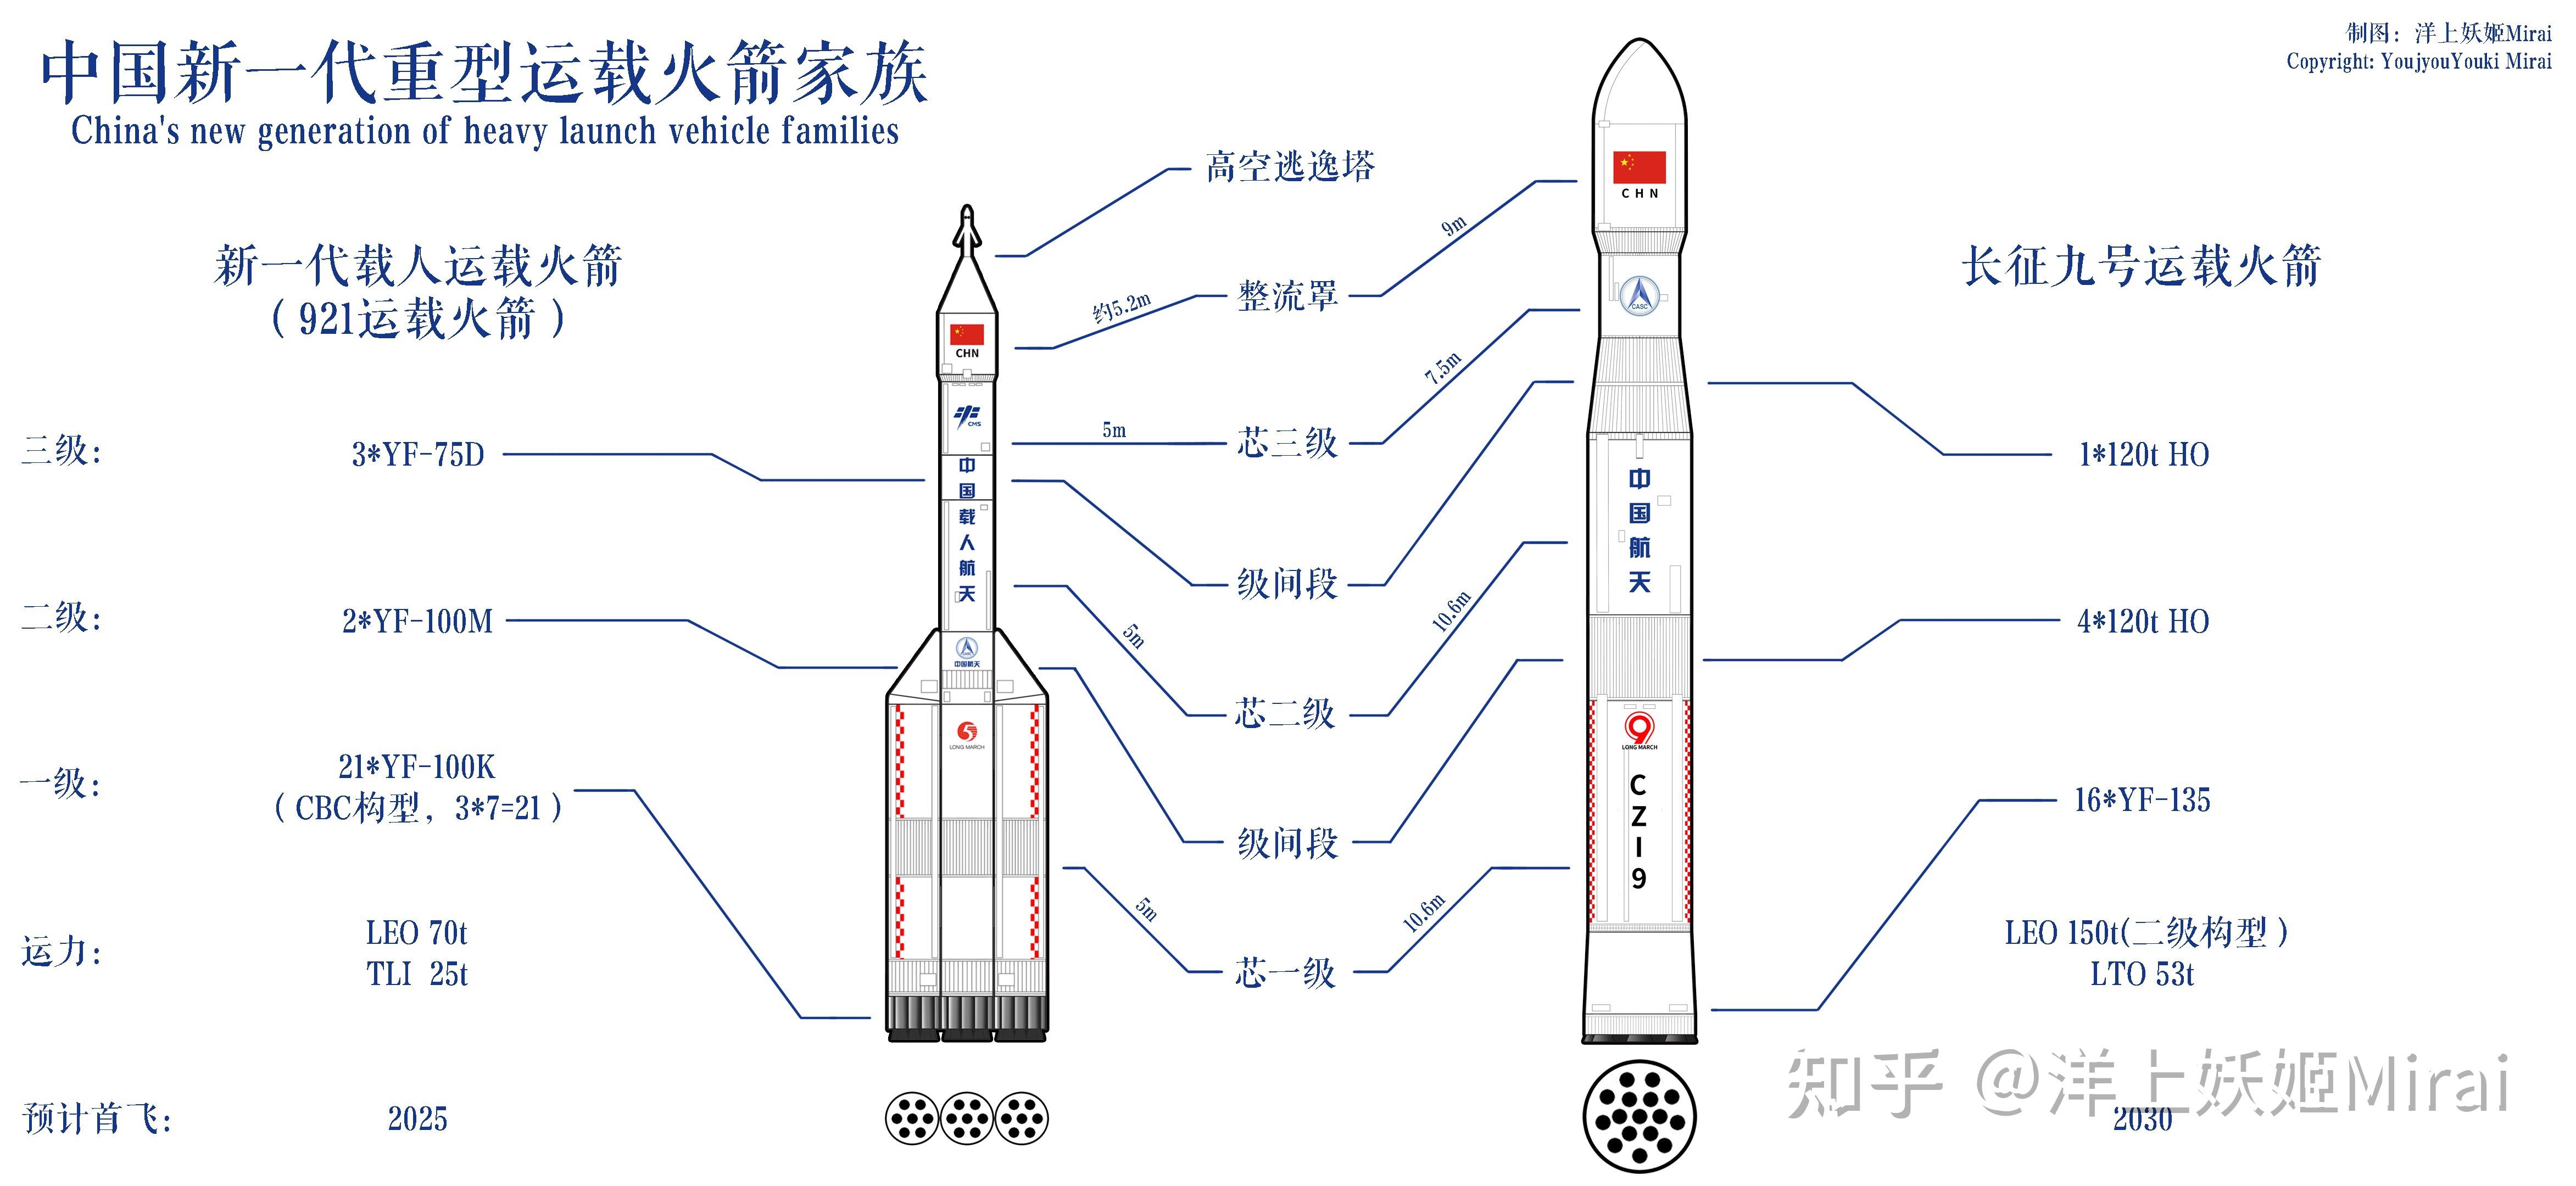 火箭组成图解结构图片